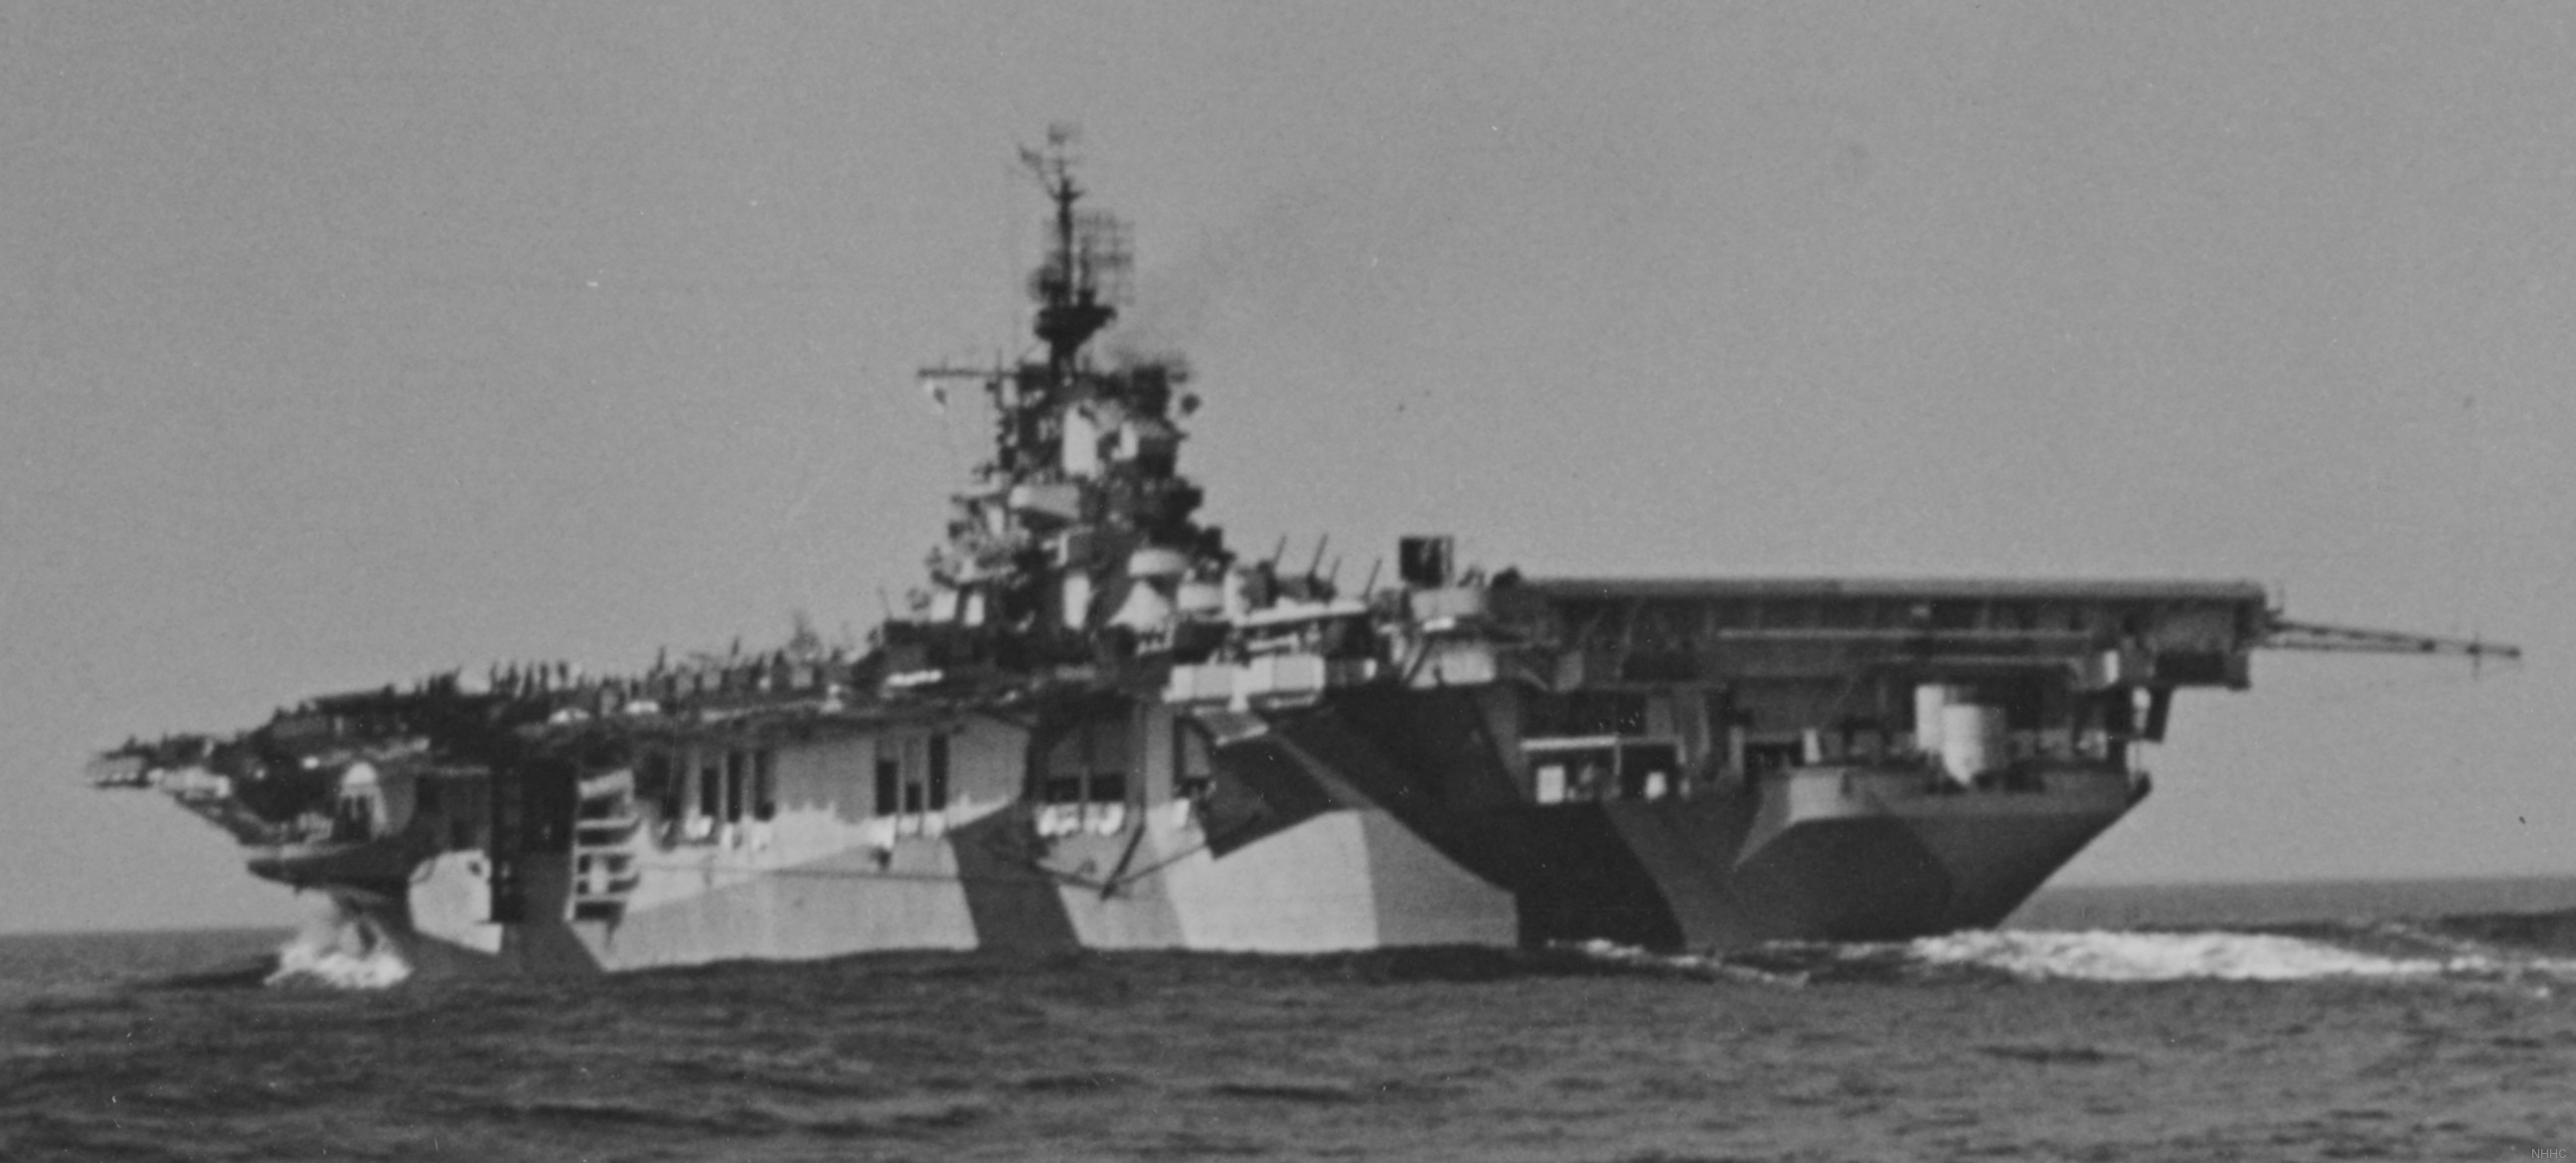 cva-19 uss hancock cv essex class aircraft carrier 1944 39